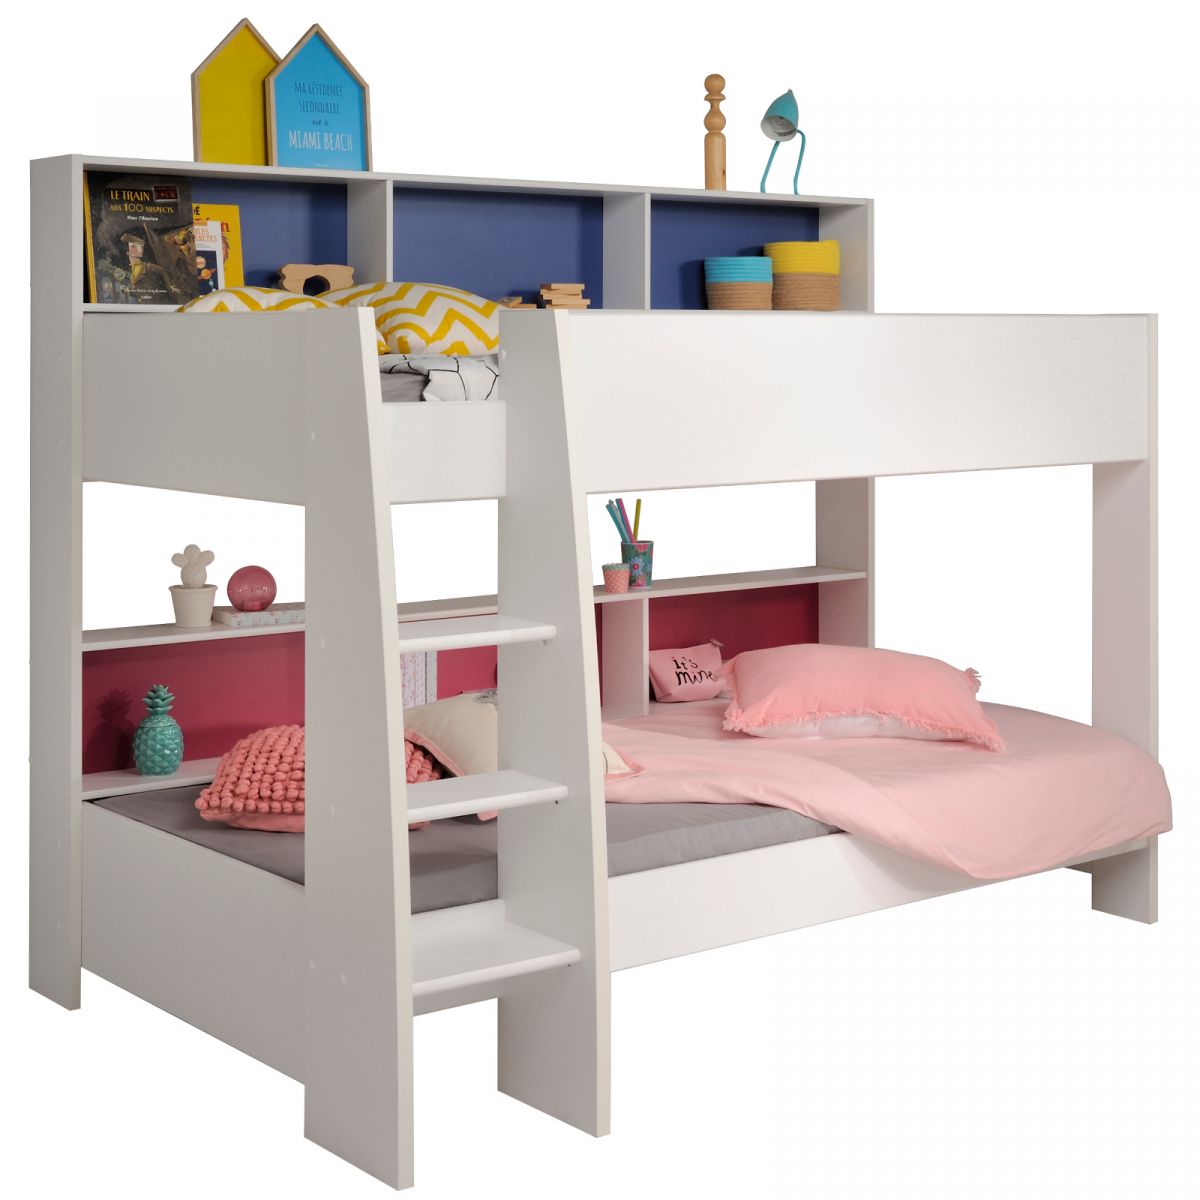 Parisot Etagenbett TamTam1 in weiss mit blau oder pink Kinder und Jugendzimmer Hochbett 209 x 165 cm